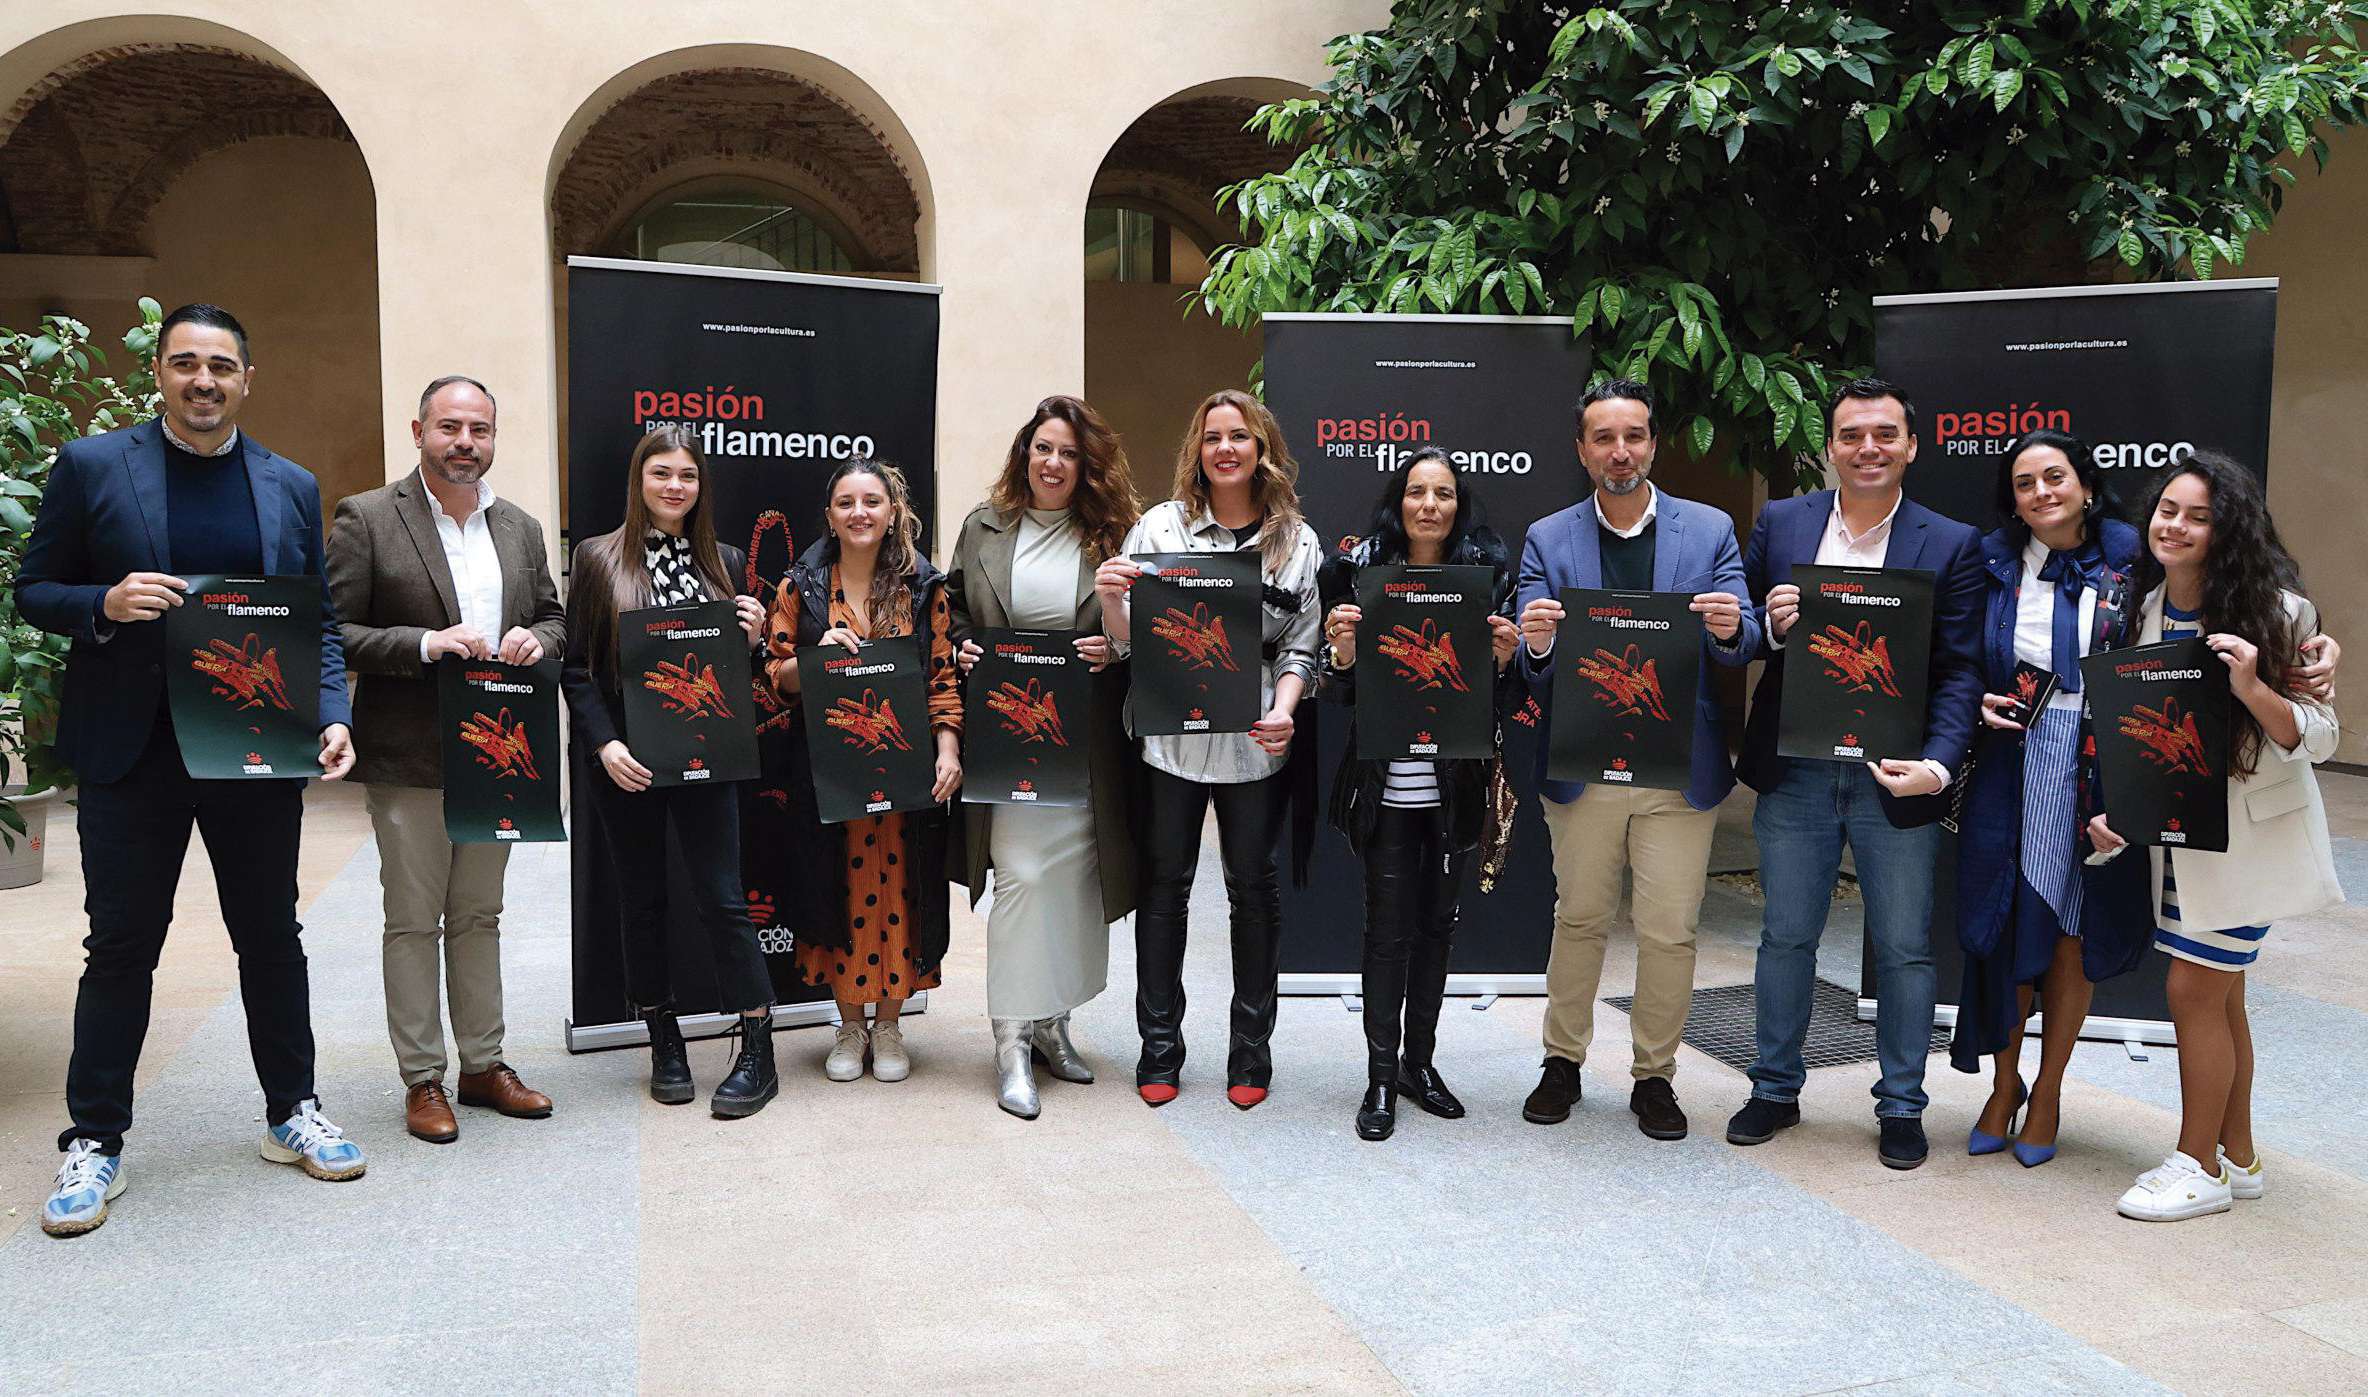 El circuito ‘Pasión por el flamenco’ recalará en 15 localidades de la provincia de Badajoz